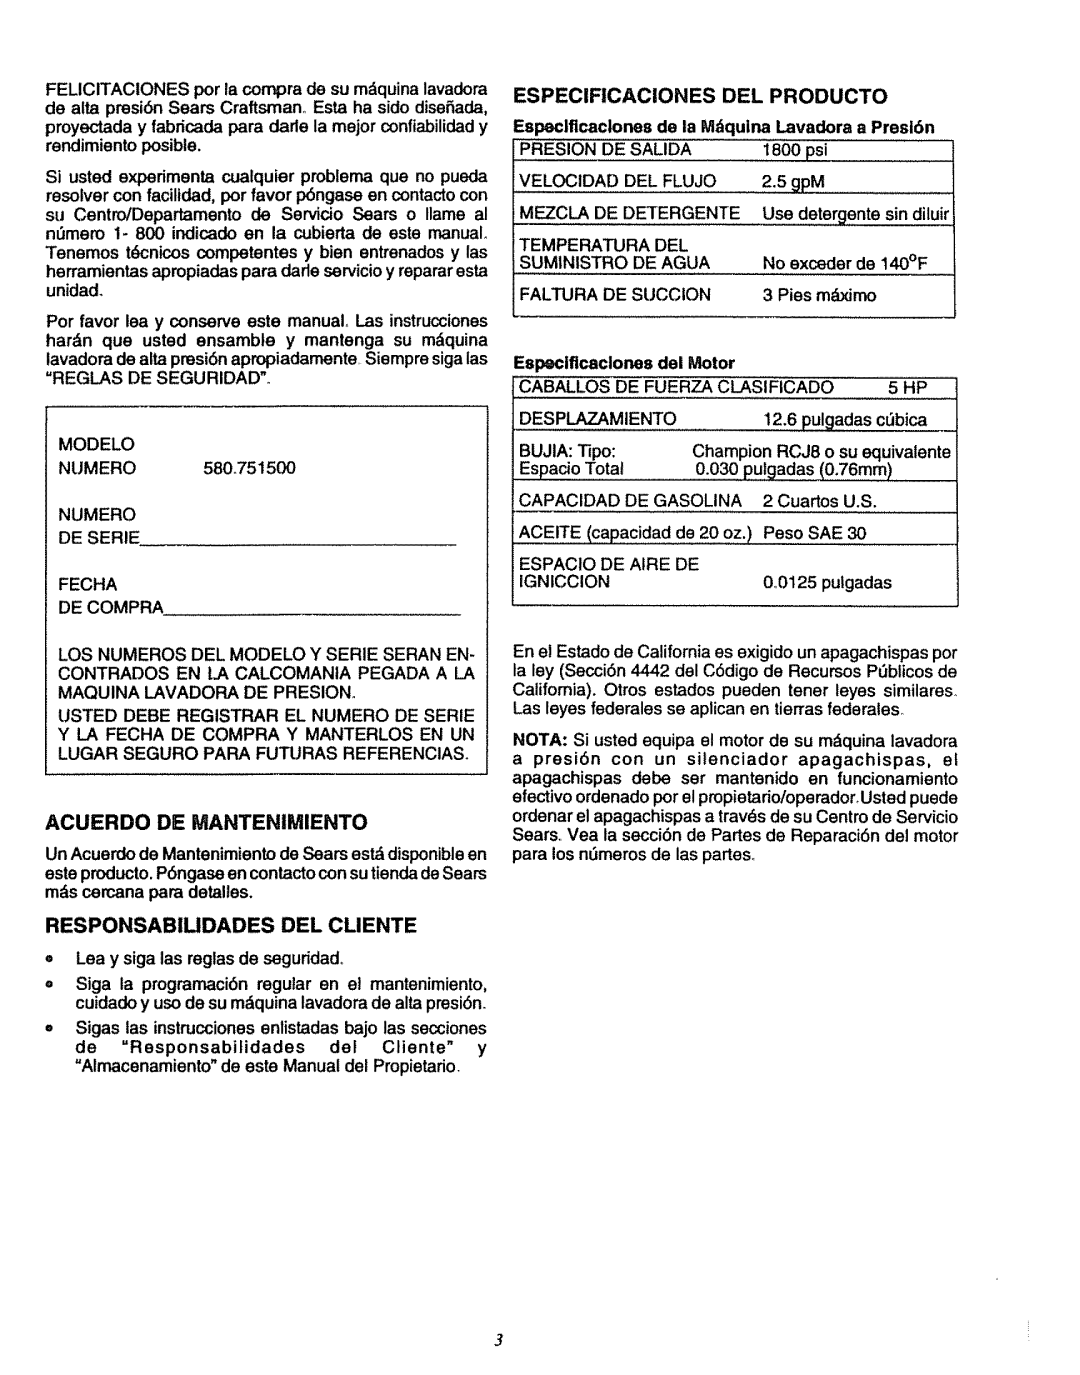 Sears 580.7515 manual Acuerdo De Mantenimiento, Responsabiudades Del Cliente, Especificaciones Del Producto 